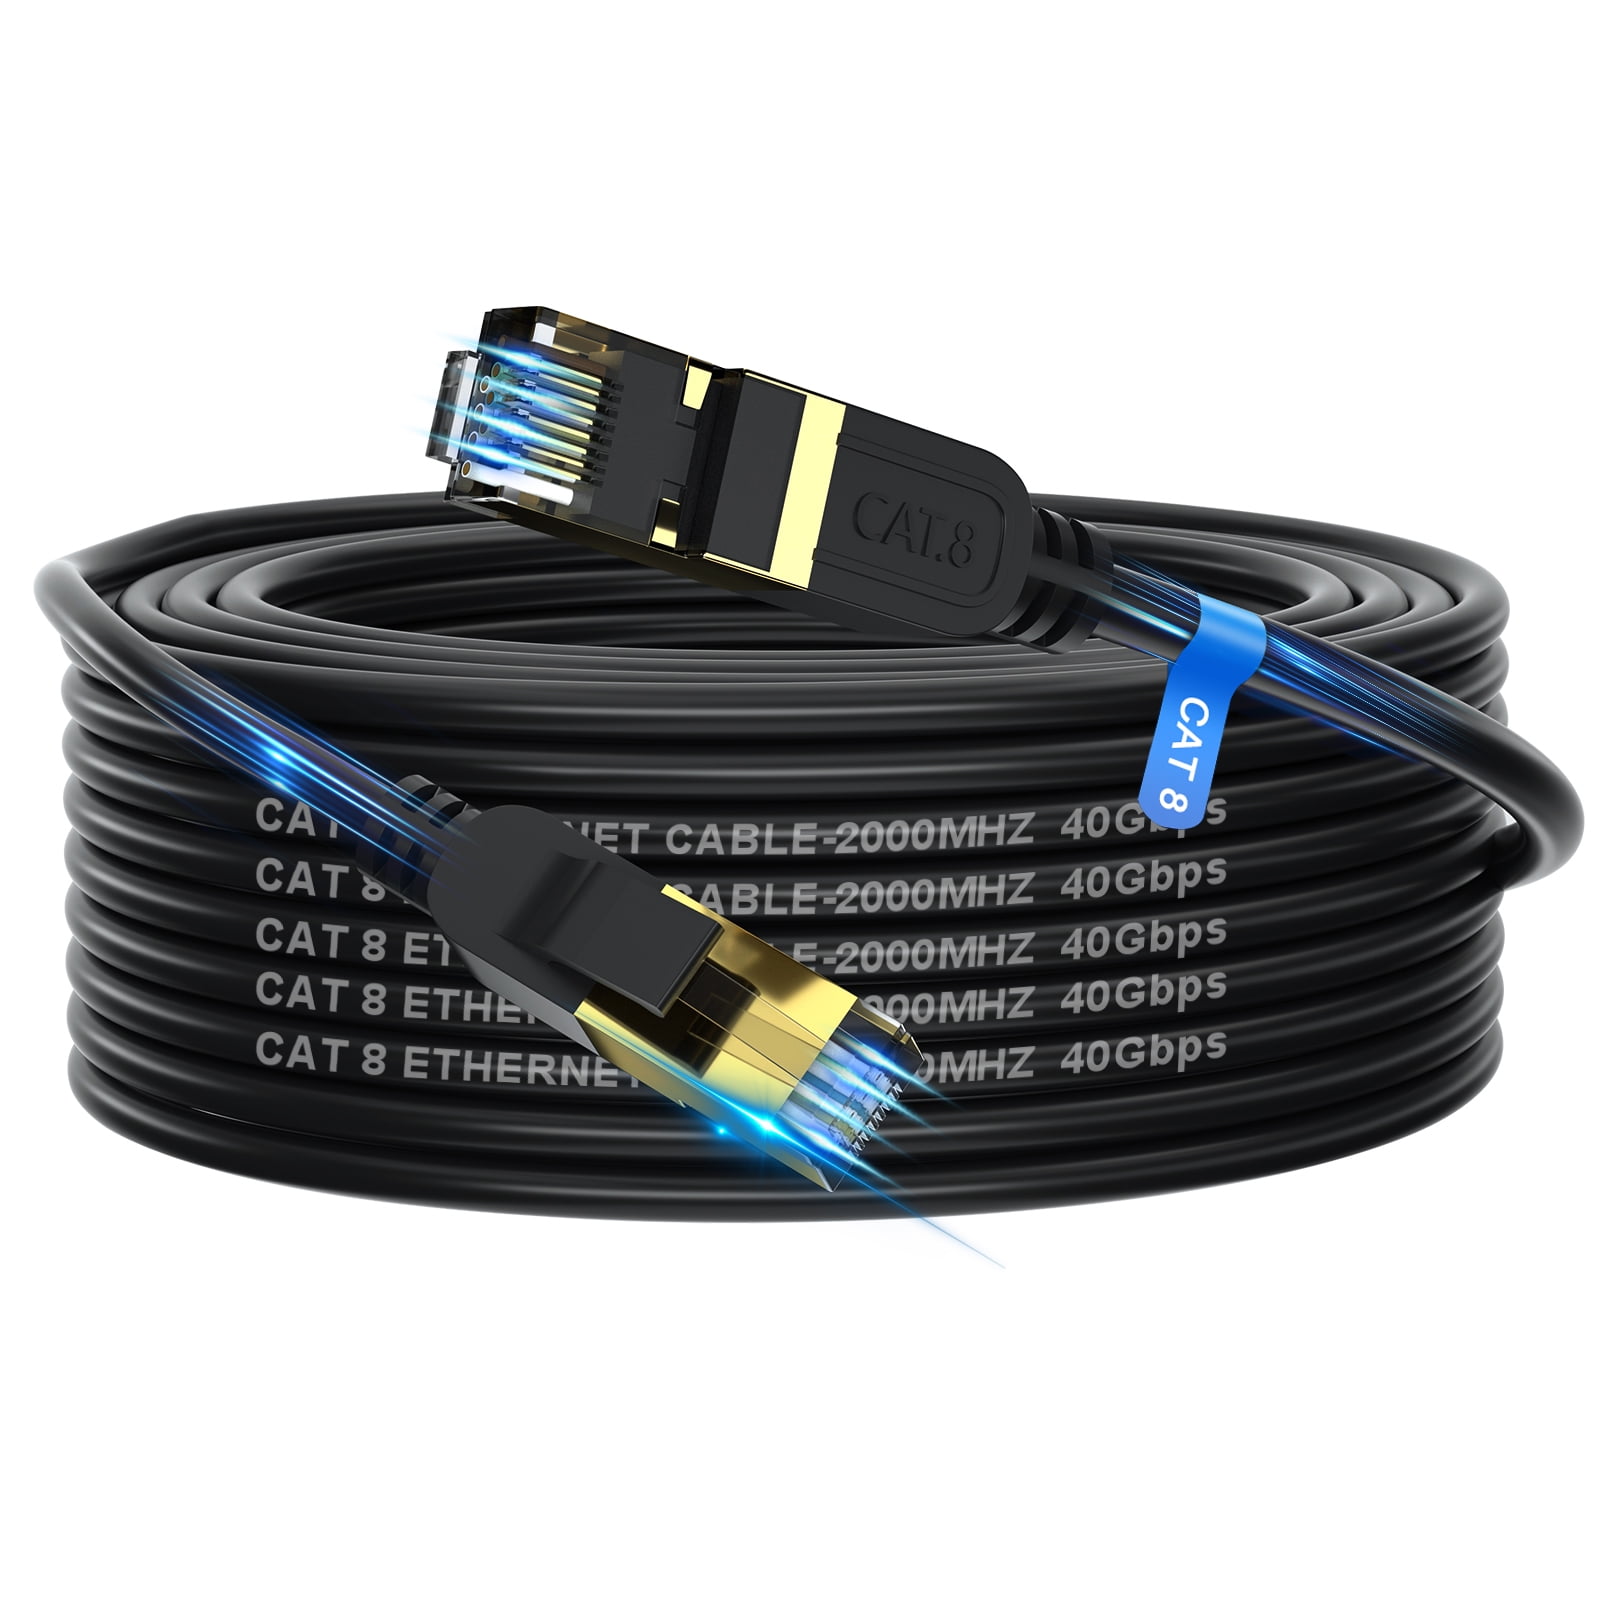  Cable Ethernet Cat 8 de 25 pies – Cable WiFi Cat8 de alta  velocidad de 40 Gbps 2000 Mhz – Conector RJ45 chapado en oro, cable de  conexión LAN resistente a